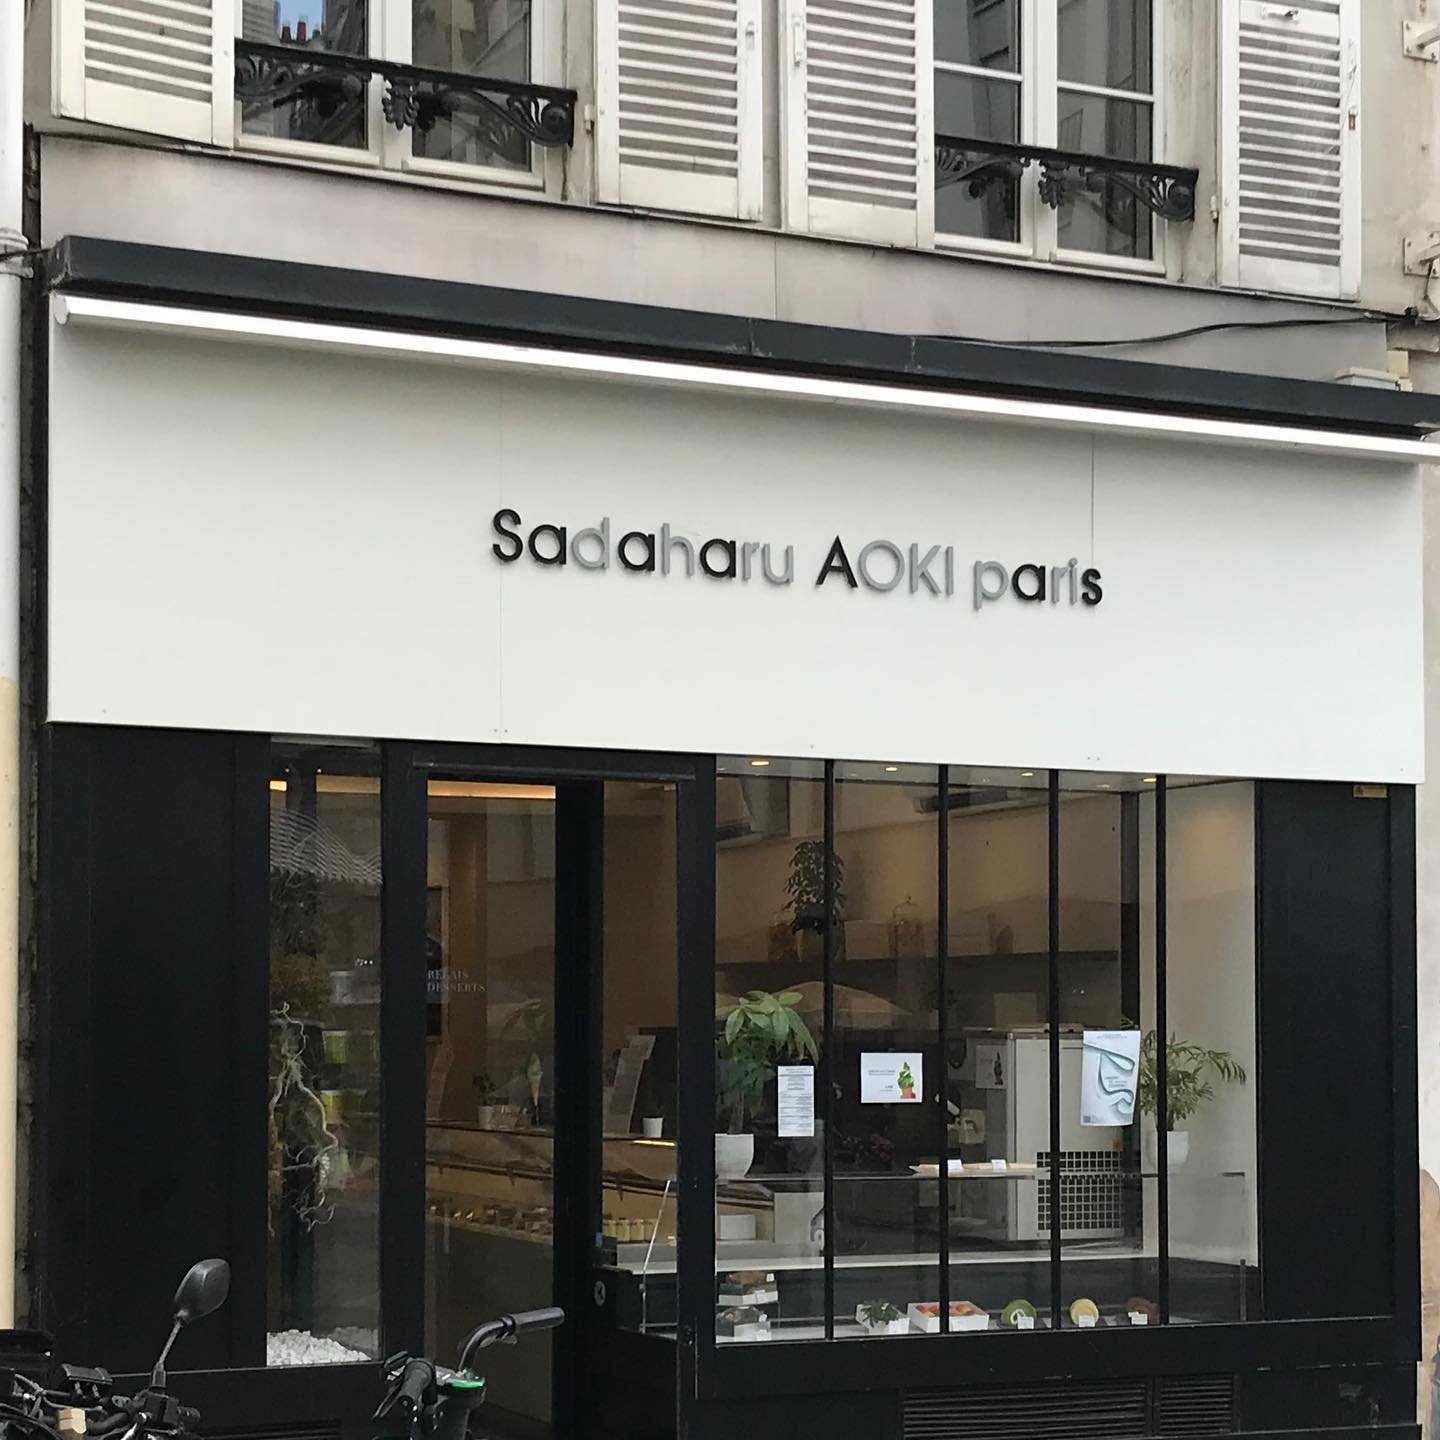 Sadaharu-Aoki-Pastries-Paris.jpg.jpg